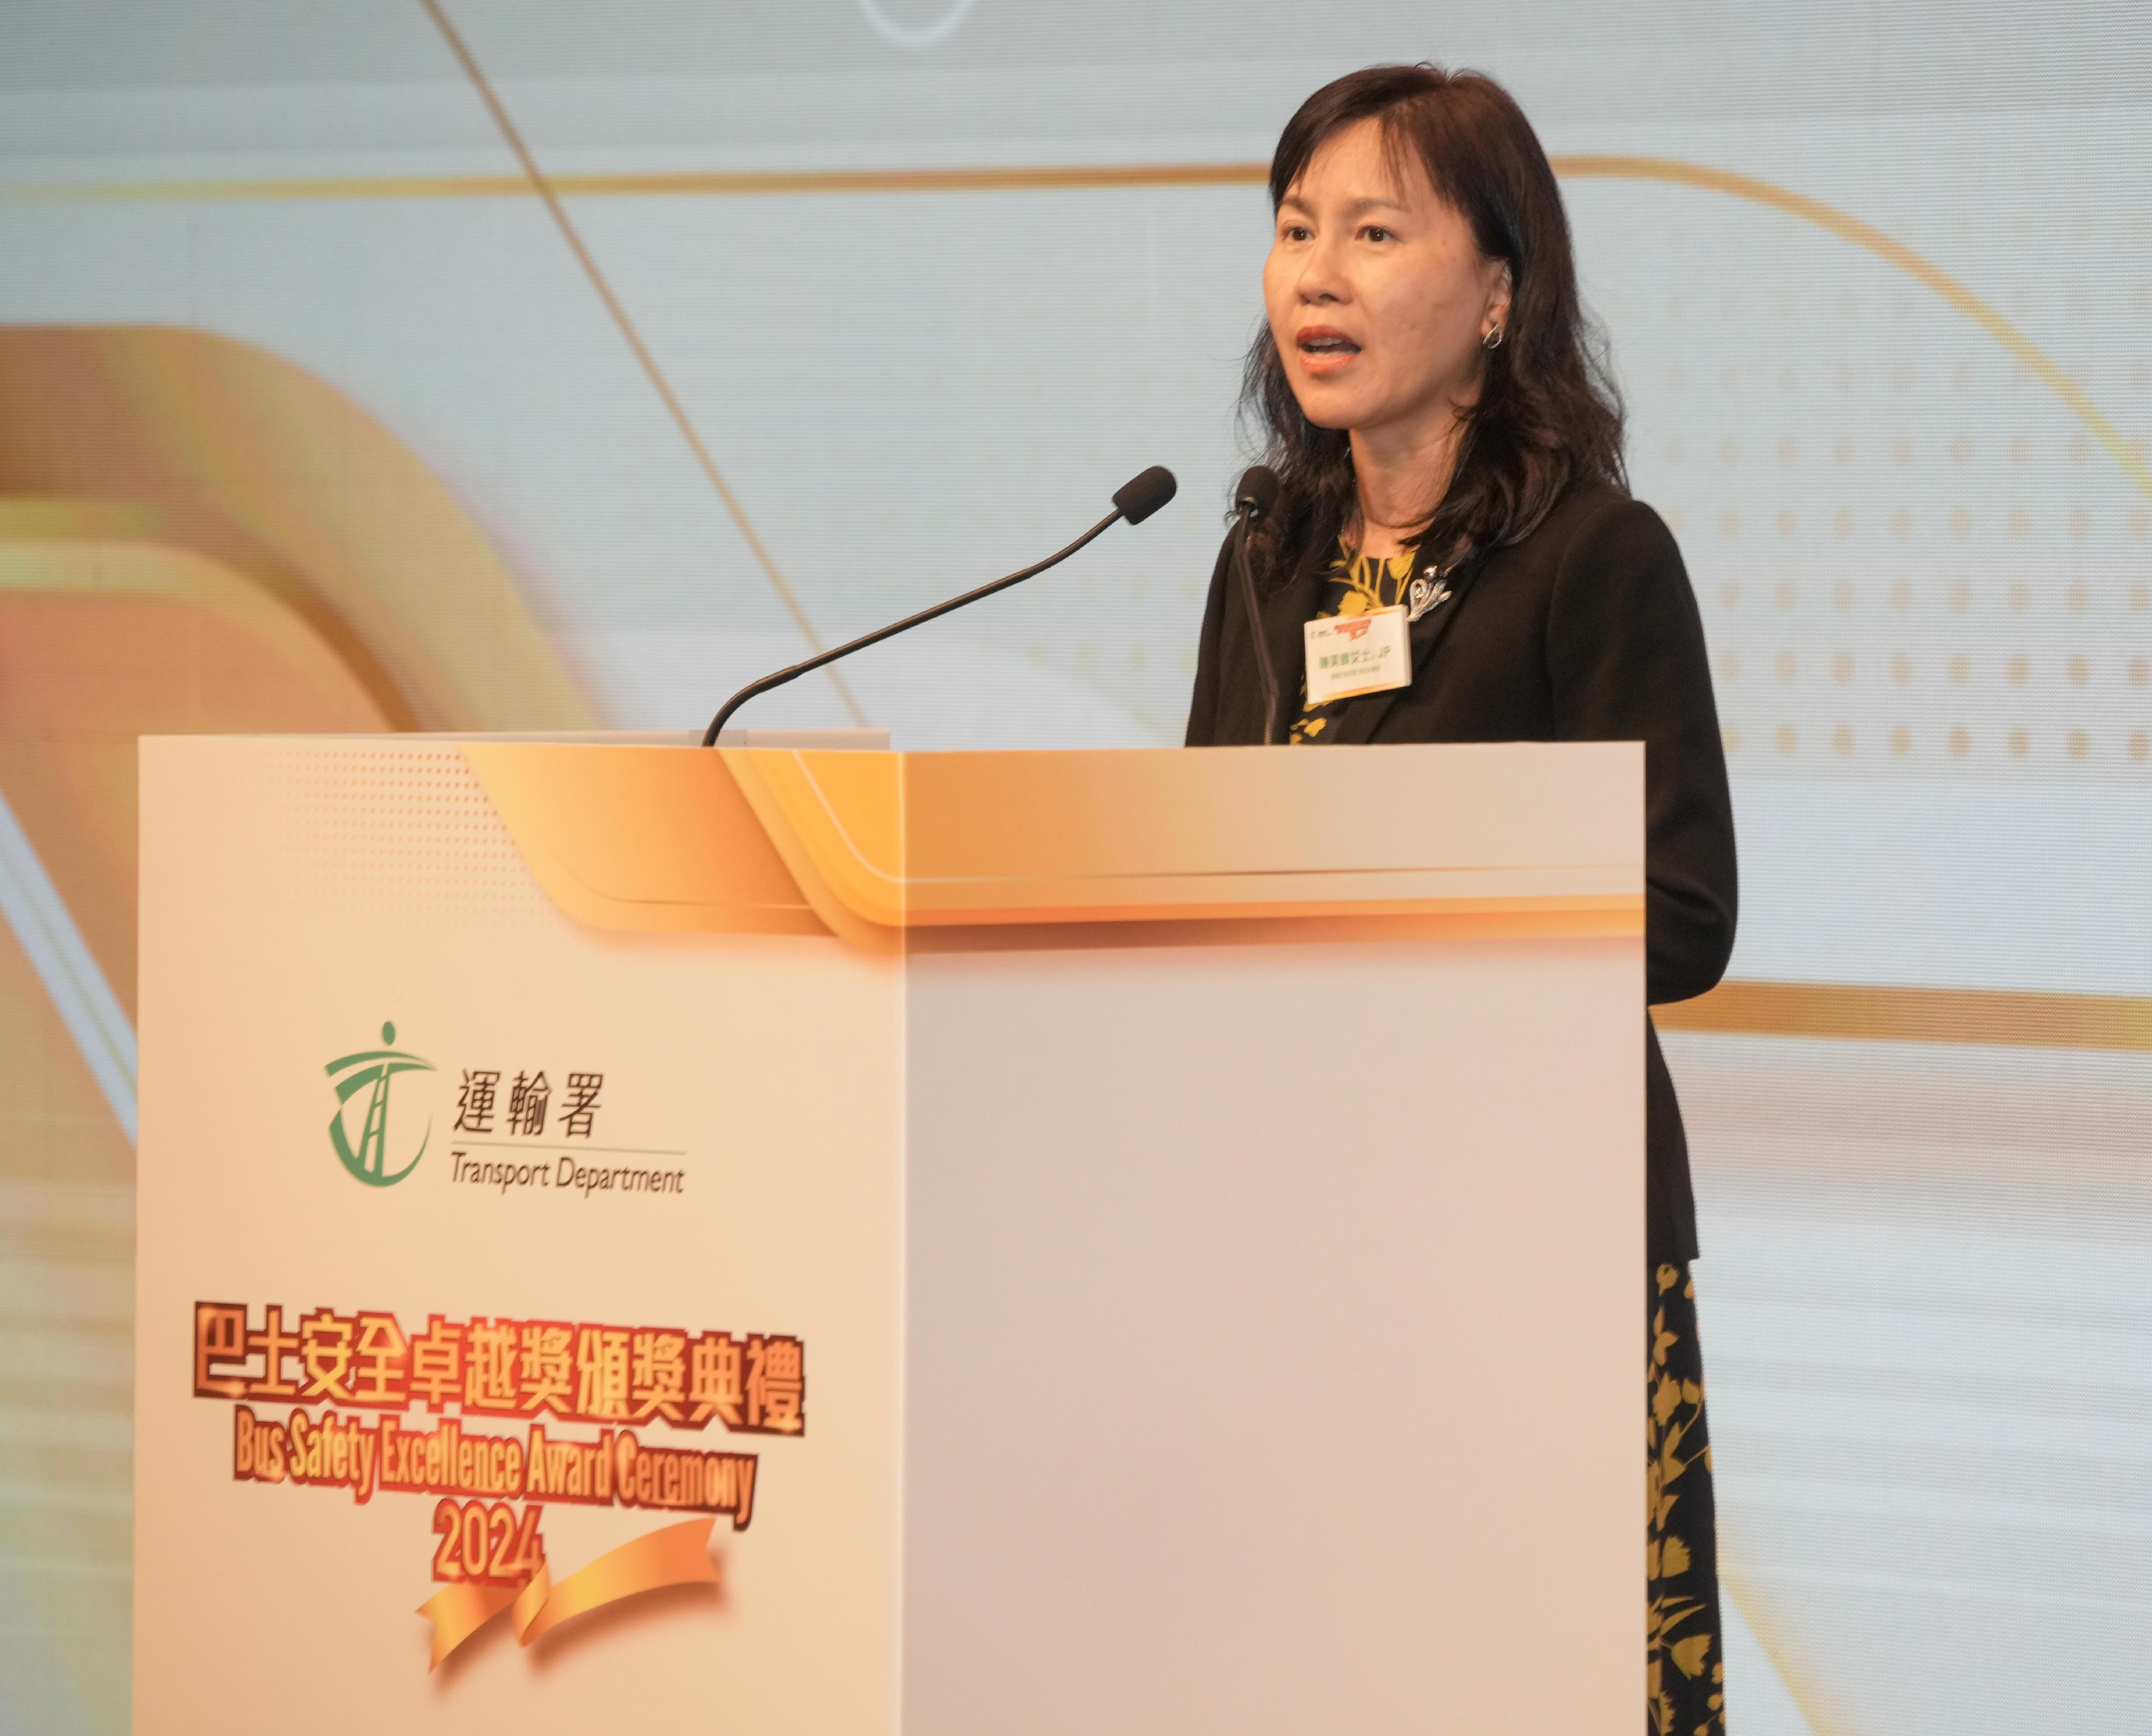 運輸及物流局常任秘書長陳美寶在頒獎典禮致辭。